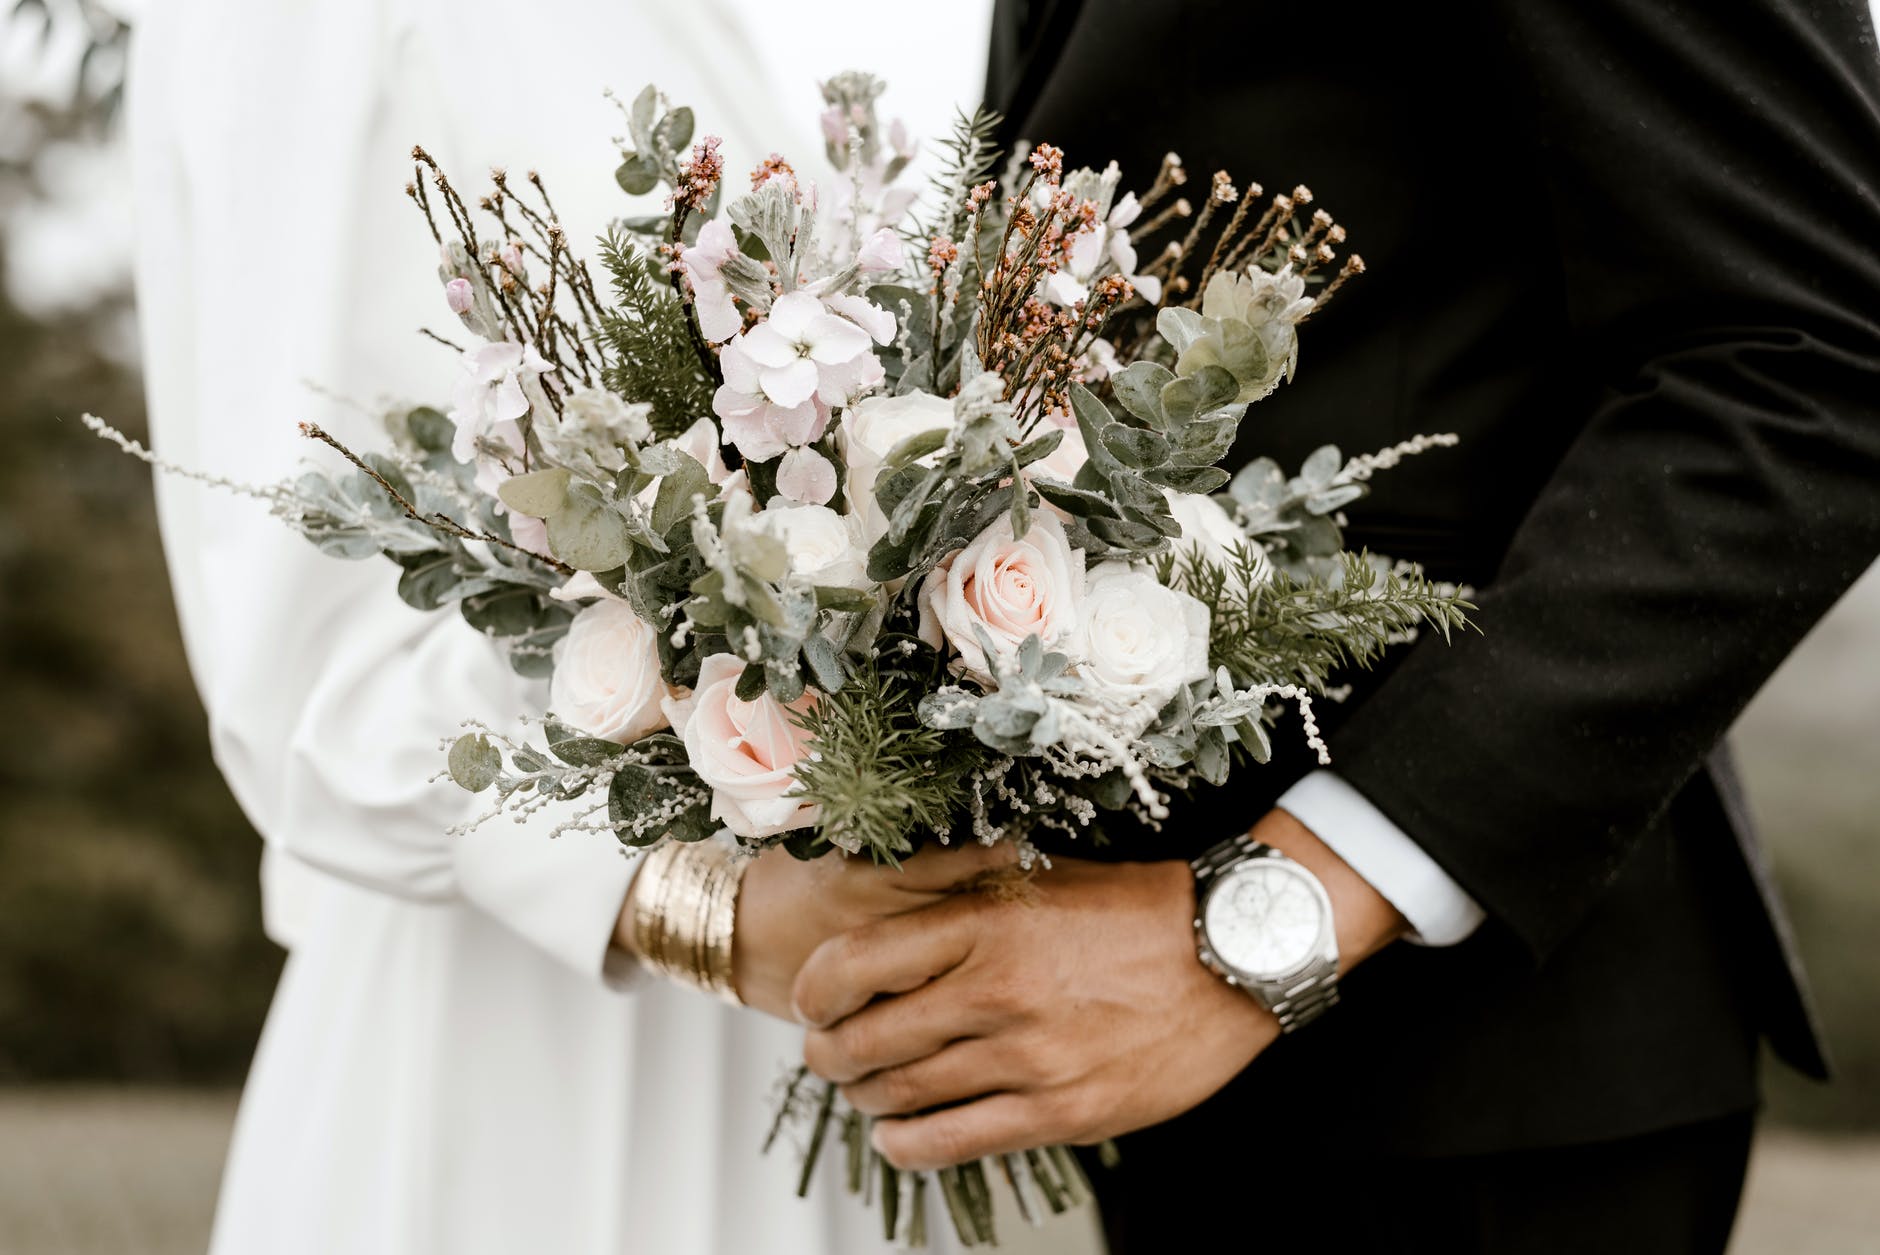 Miri care se țin de mână în ziua nunții, cu buchetul miresei în prim-plan